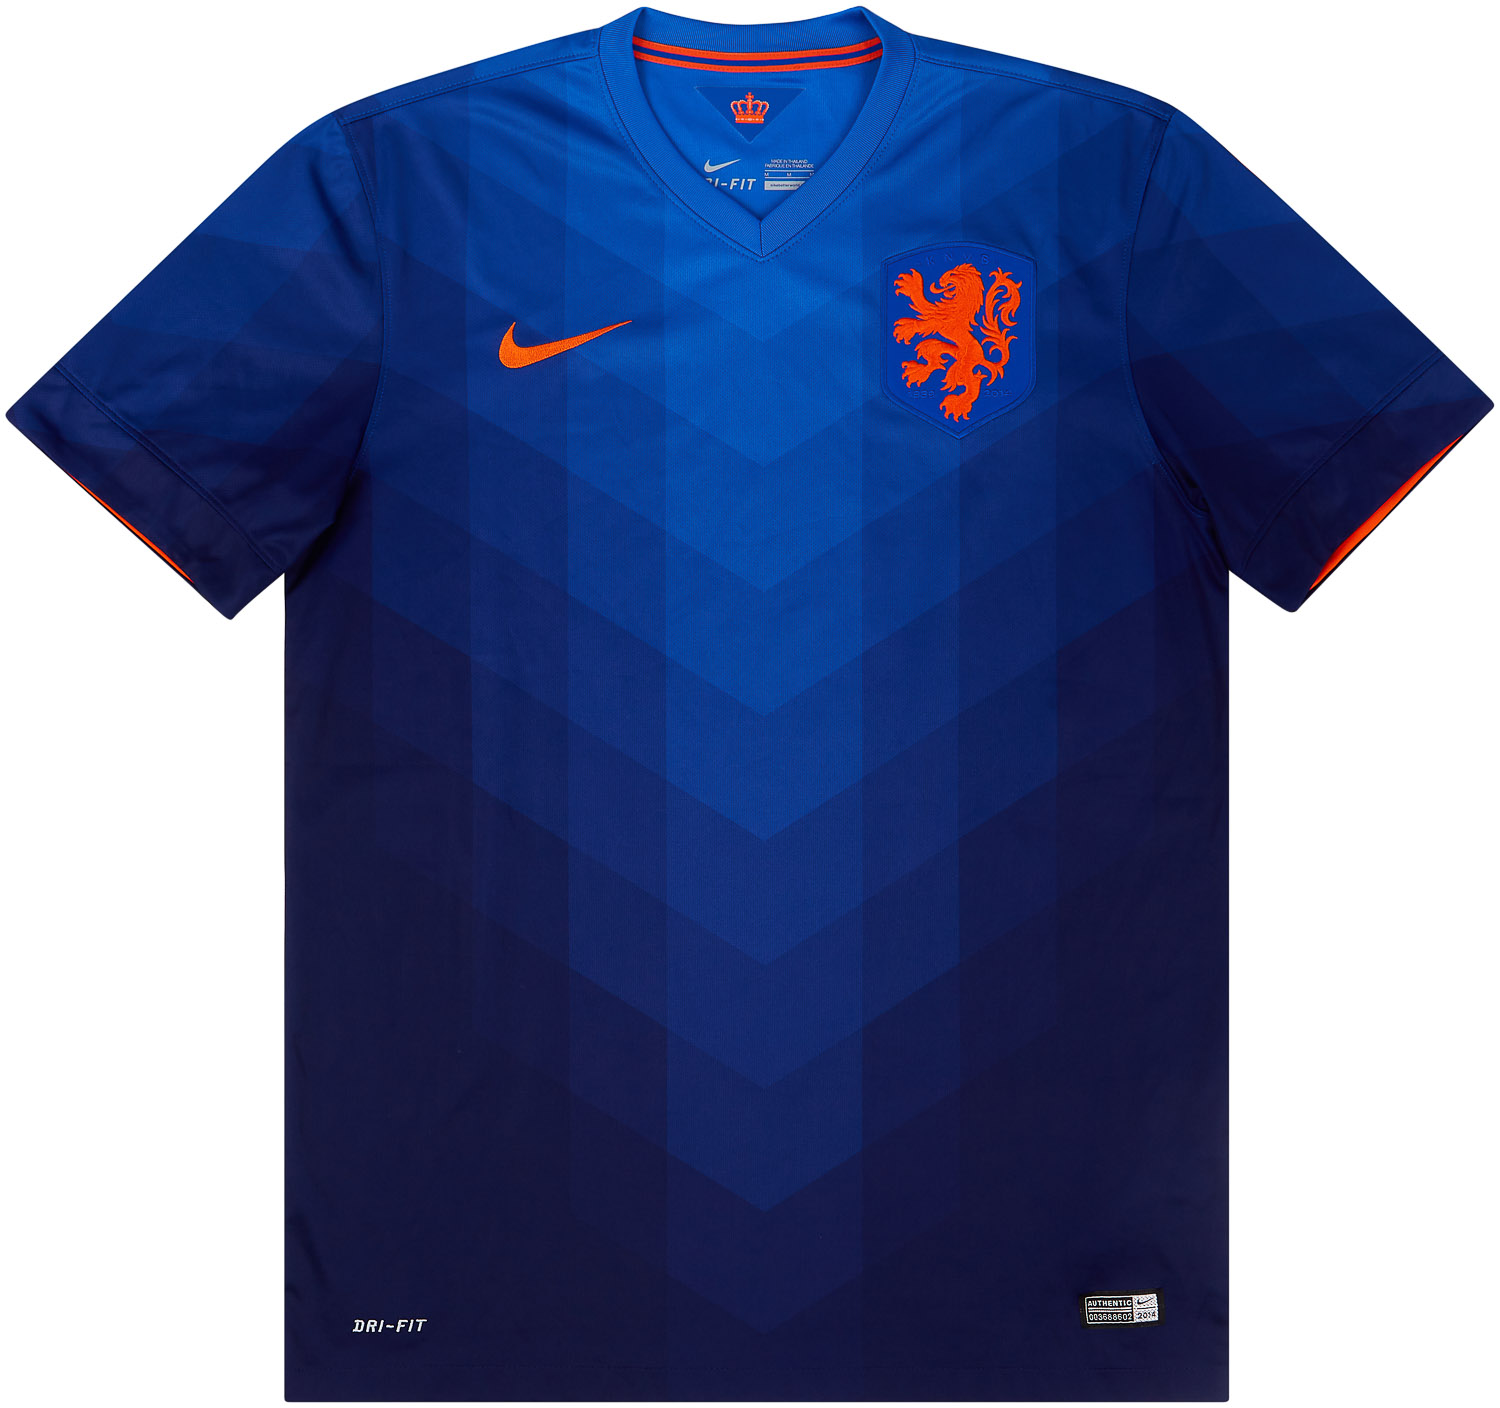 2014-15 Netherlands Away Shirt - 8/10 - ()